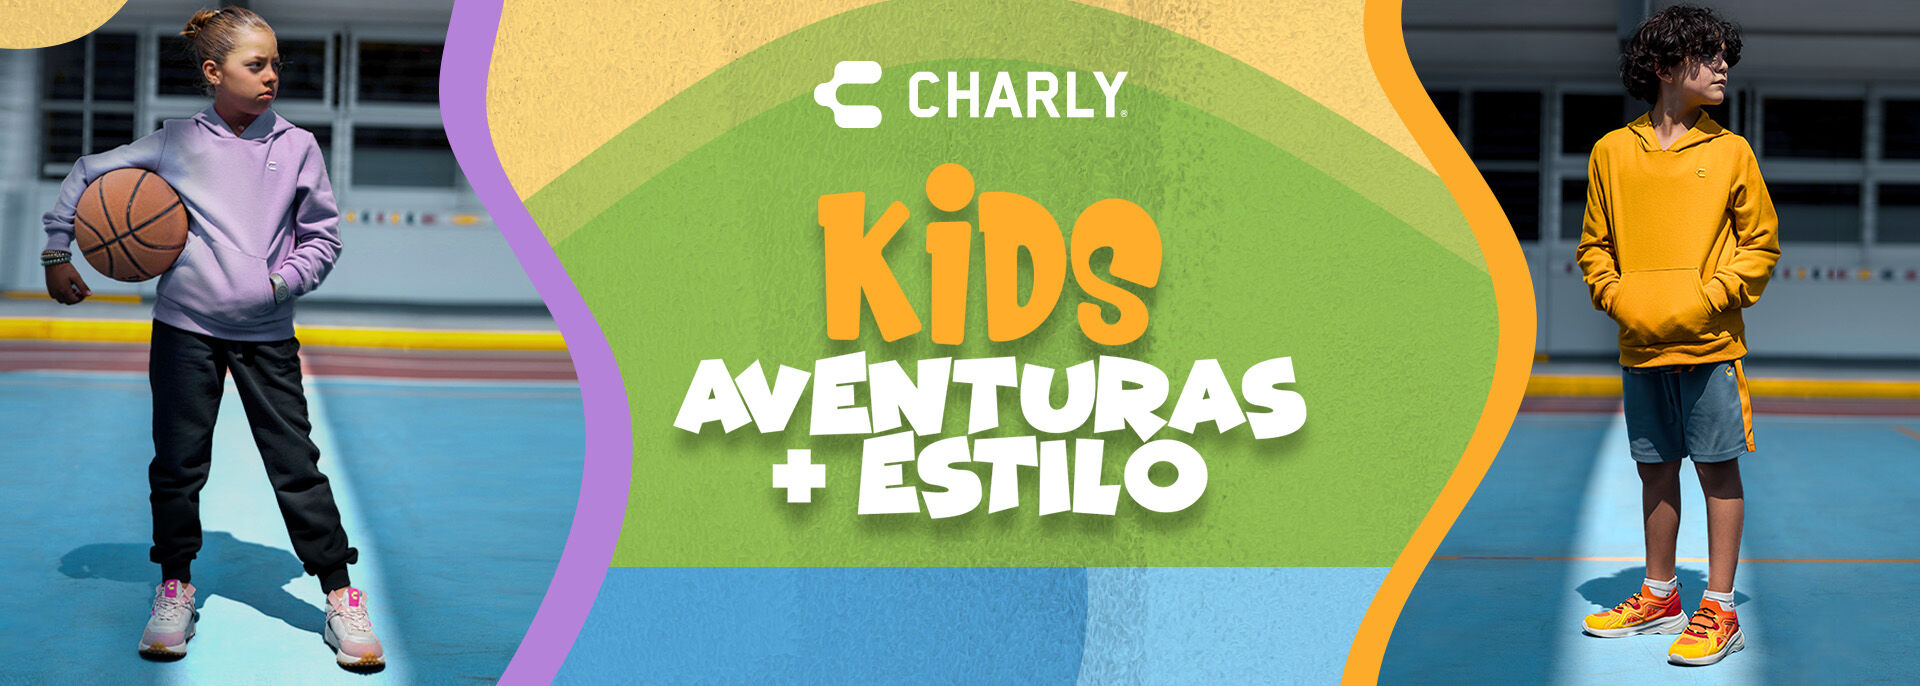 Charly_Kids_Aventuras_USesp_D.jpg